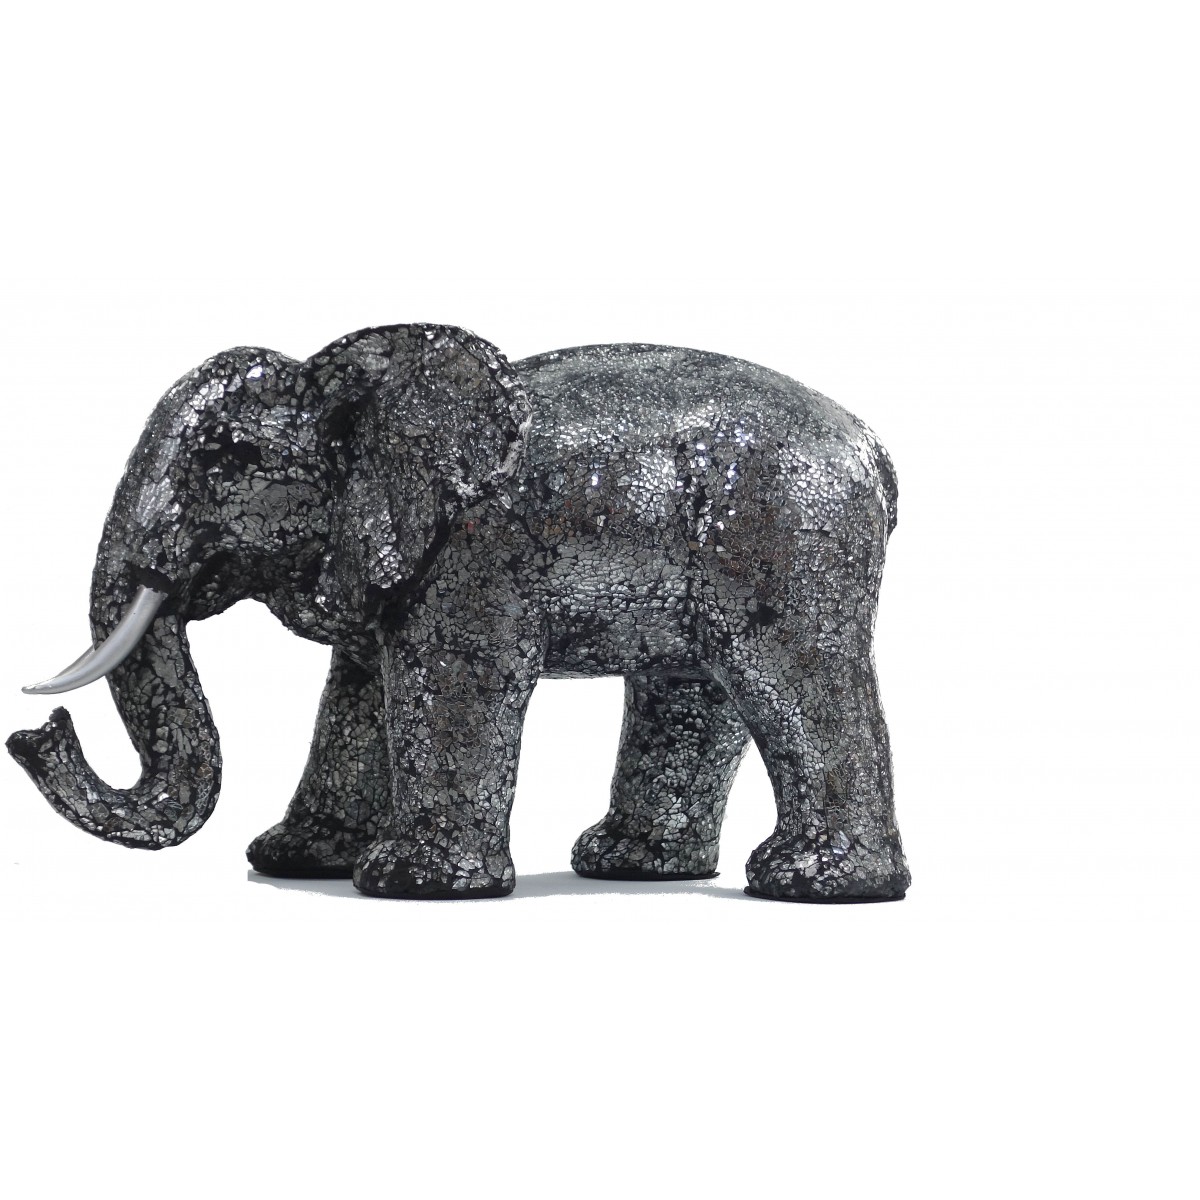 Statua dell'elefante design scultura decorativa in resina (nero, argento) -  AMP Story 5542